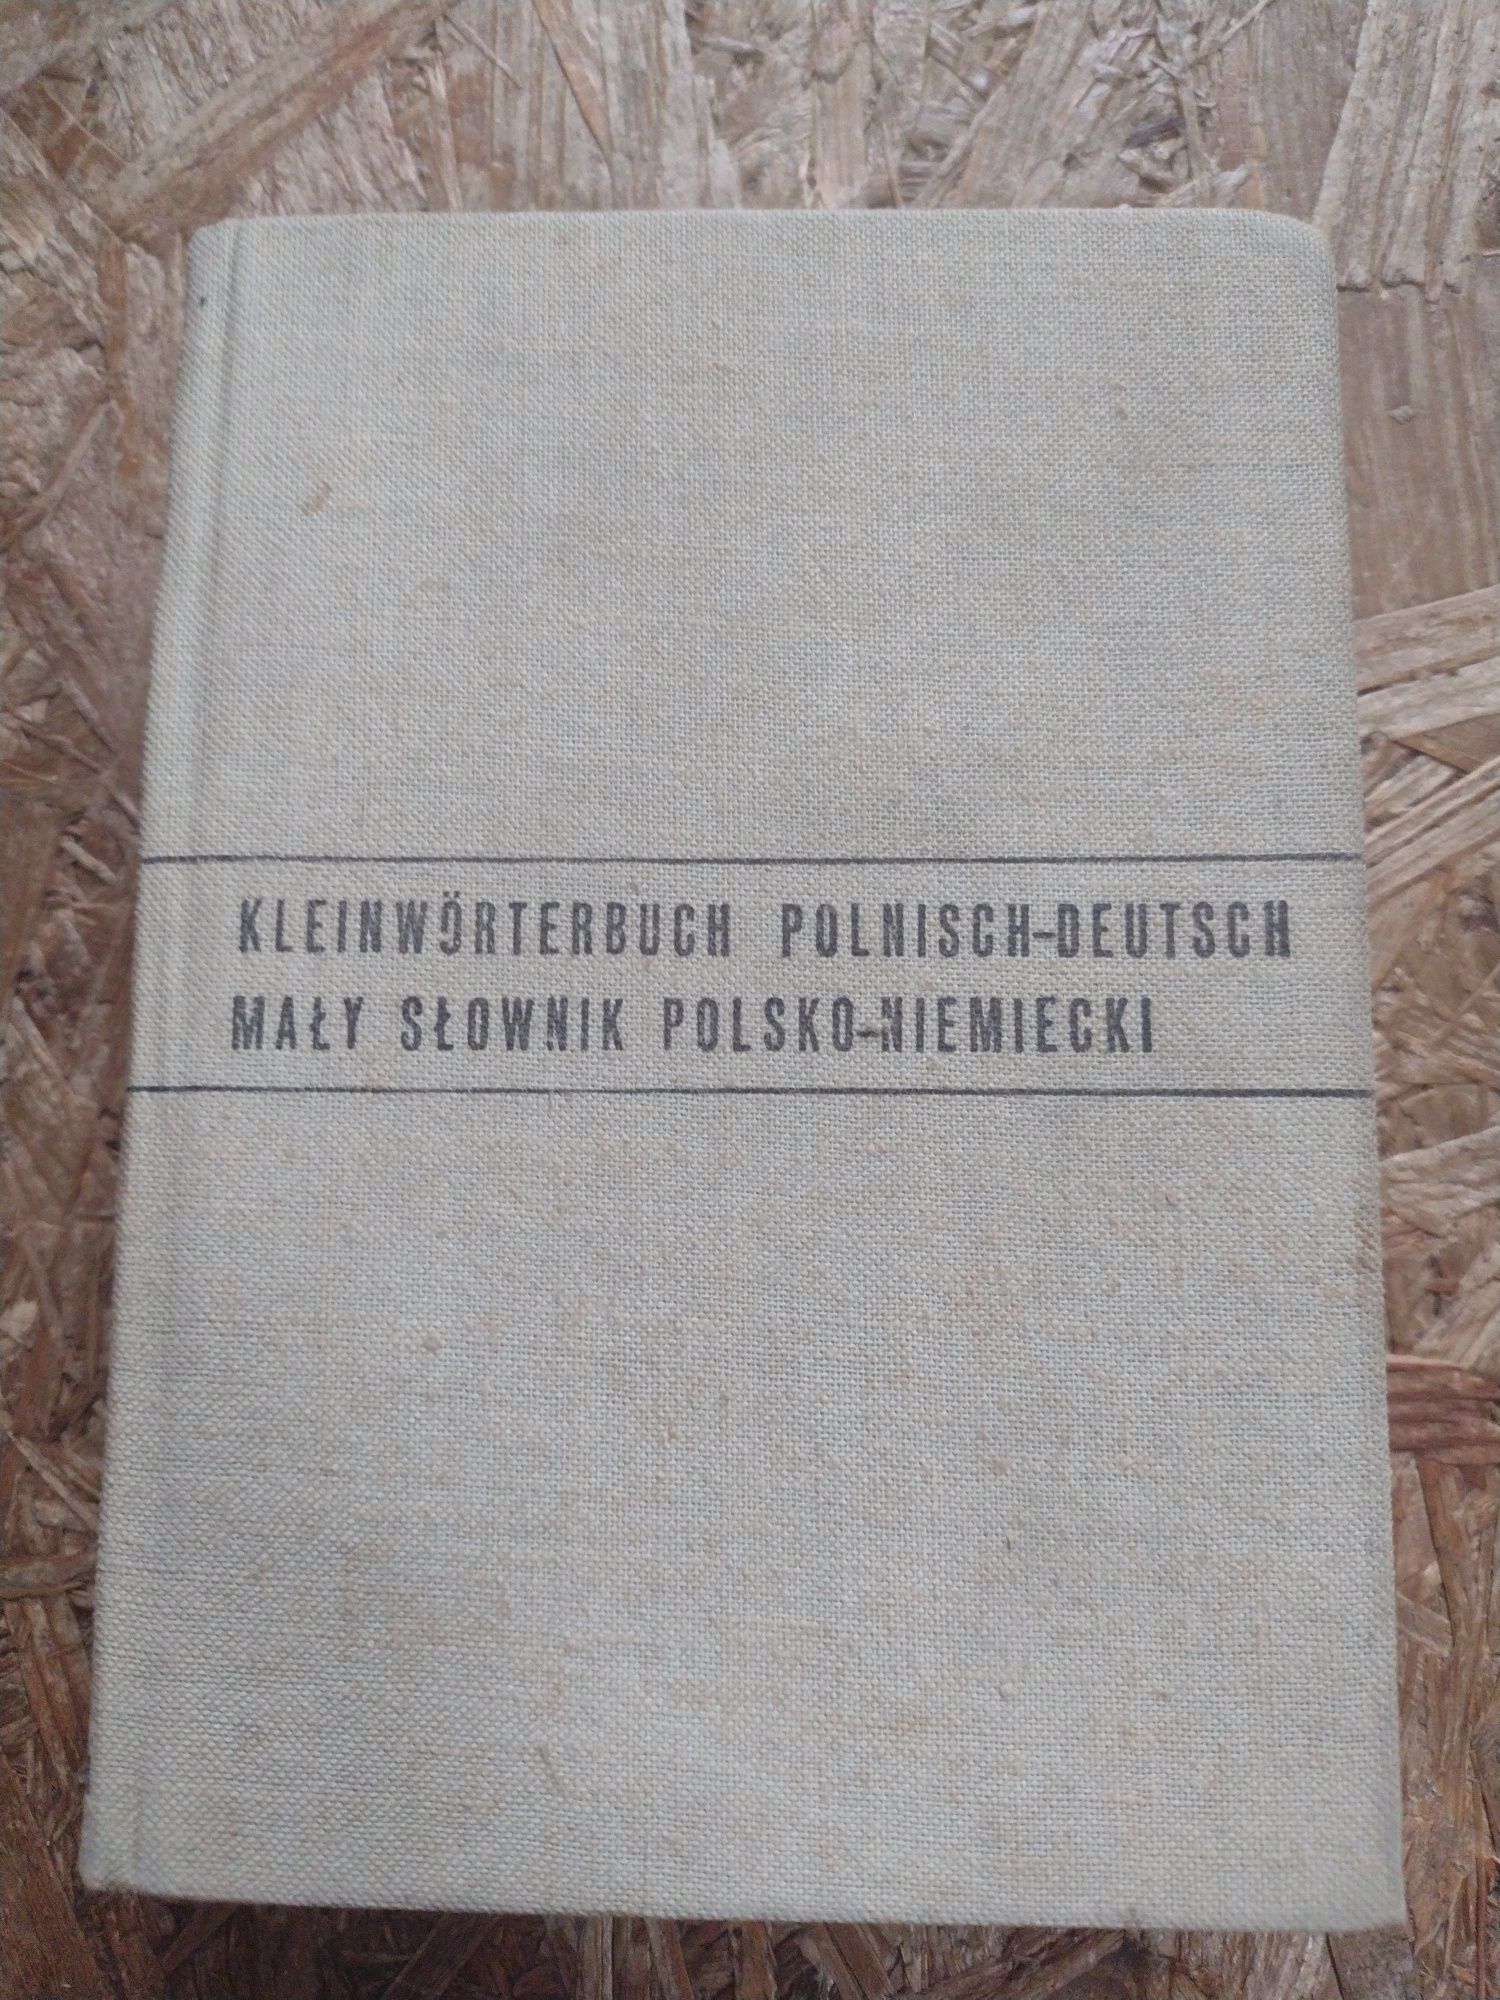 Mały słownik polsko-niemiecki Jan Czochralski dwustronny 1968